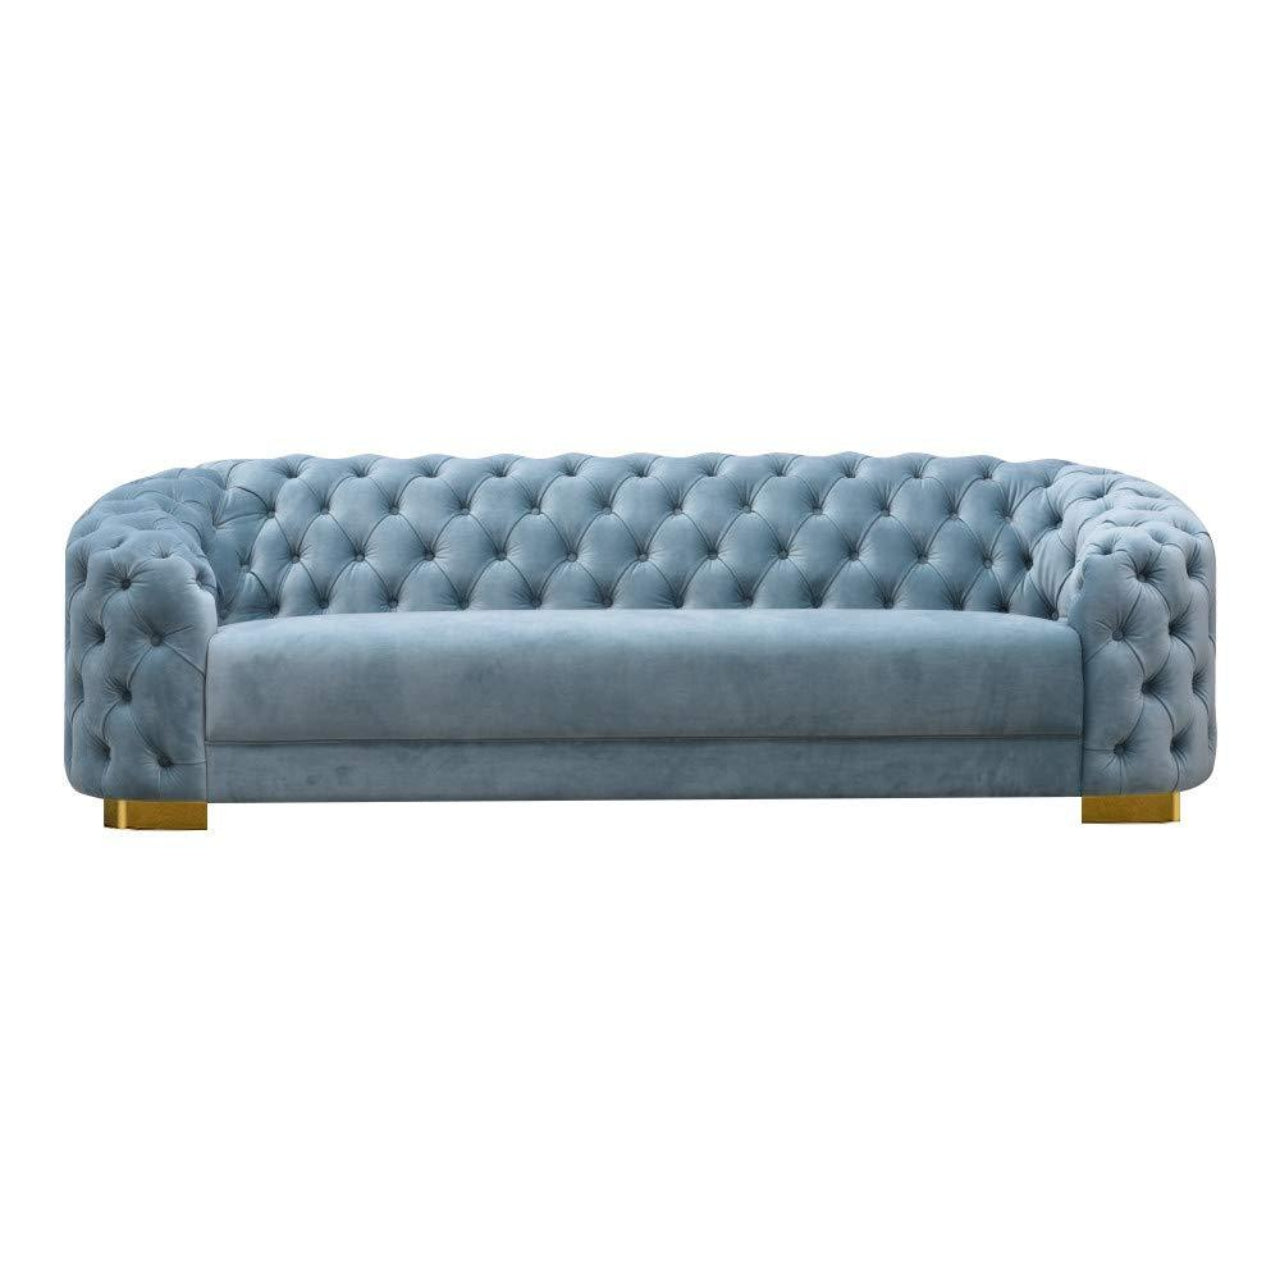 3 Seater Sofa Set- Nia Valvet Fabric Sofa Set (Sky Blue)